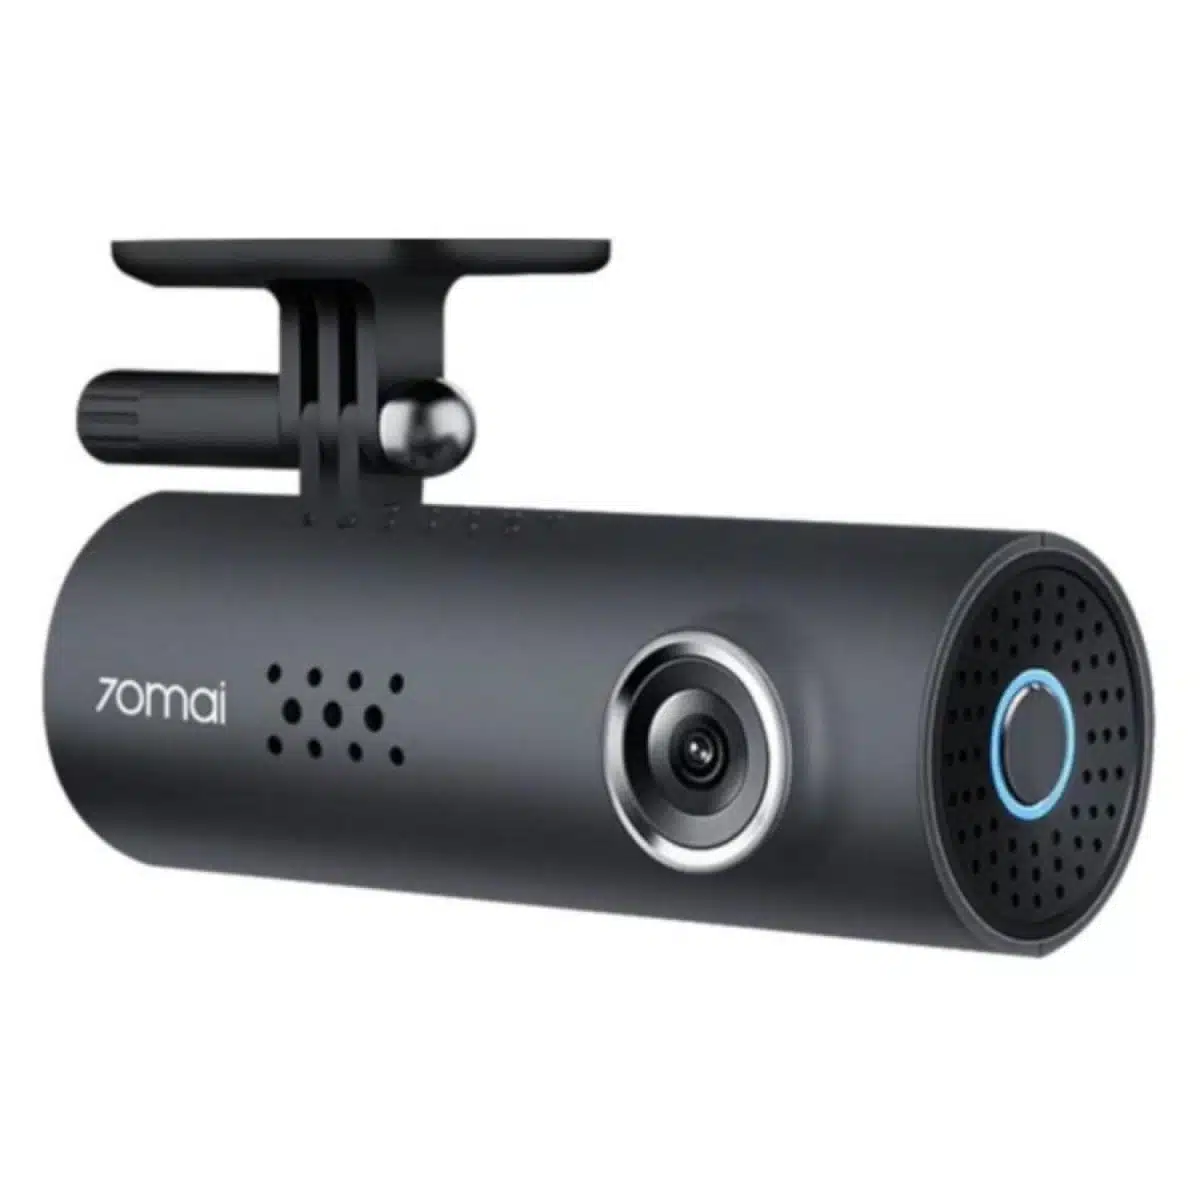 70Mai 1S D06 Akıllı Araç İçi Kamera - 130° Geniş Açı Lens -1080p -Sesli Kontrol - Global Versiyon beyaz zemin üzerinde gösterilmektedir.